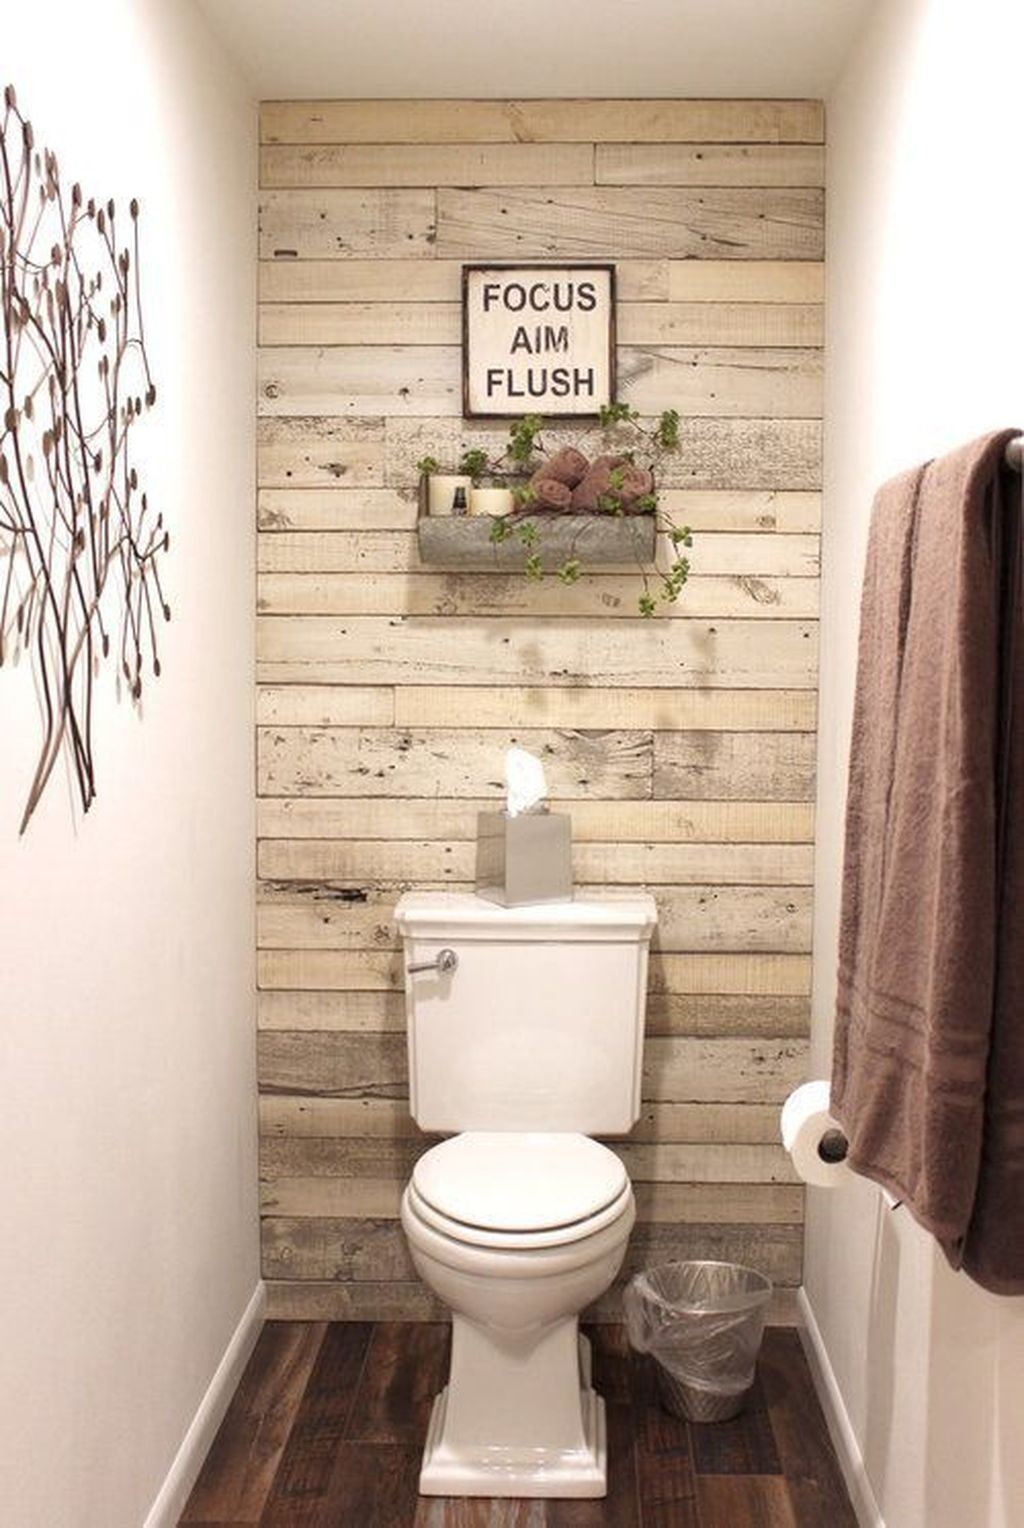 Чем отделать стены в туалете дешево и красиво – особенности